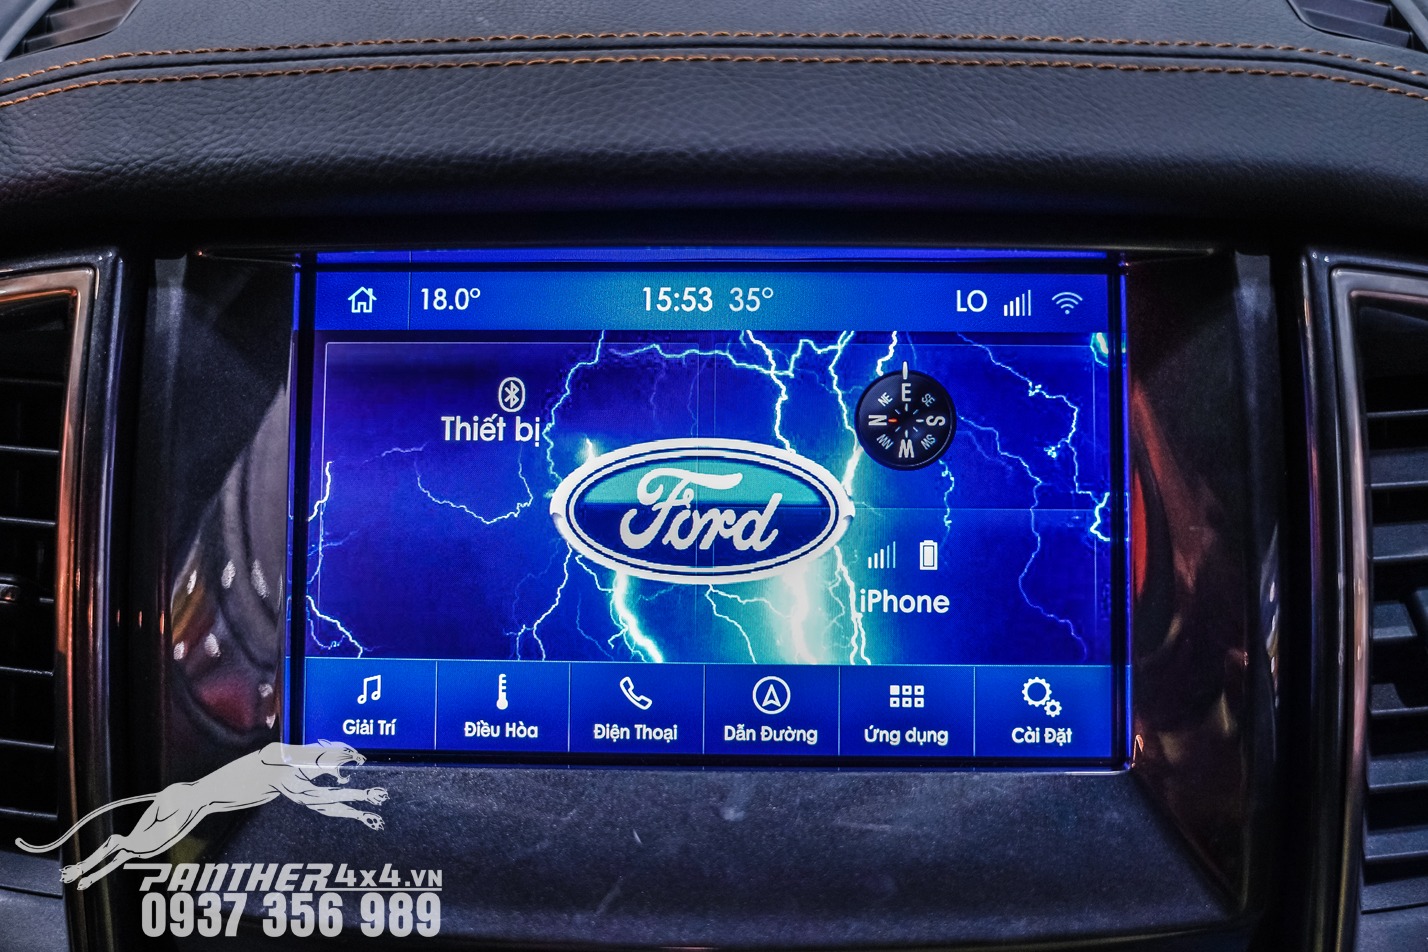 Tính năng ẩn thay đổi giao diện màn hình khởi động cho xe Ford cho bạn một màn hình mới lạ, sang trọng và đẹp mắt. Giúp xe bạn trở nên mới mẻ hơn, đây được cho là một sản phẩm mà nhiều chủ xe quan tâm nhất.